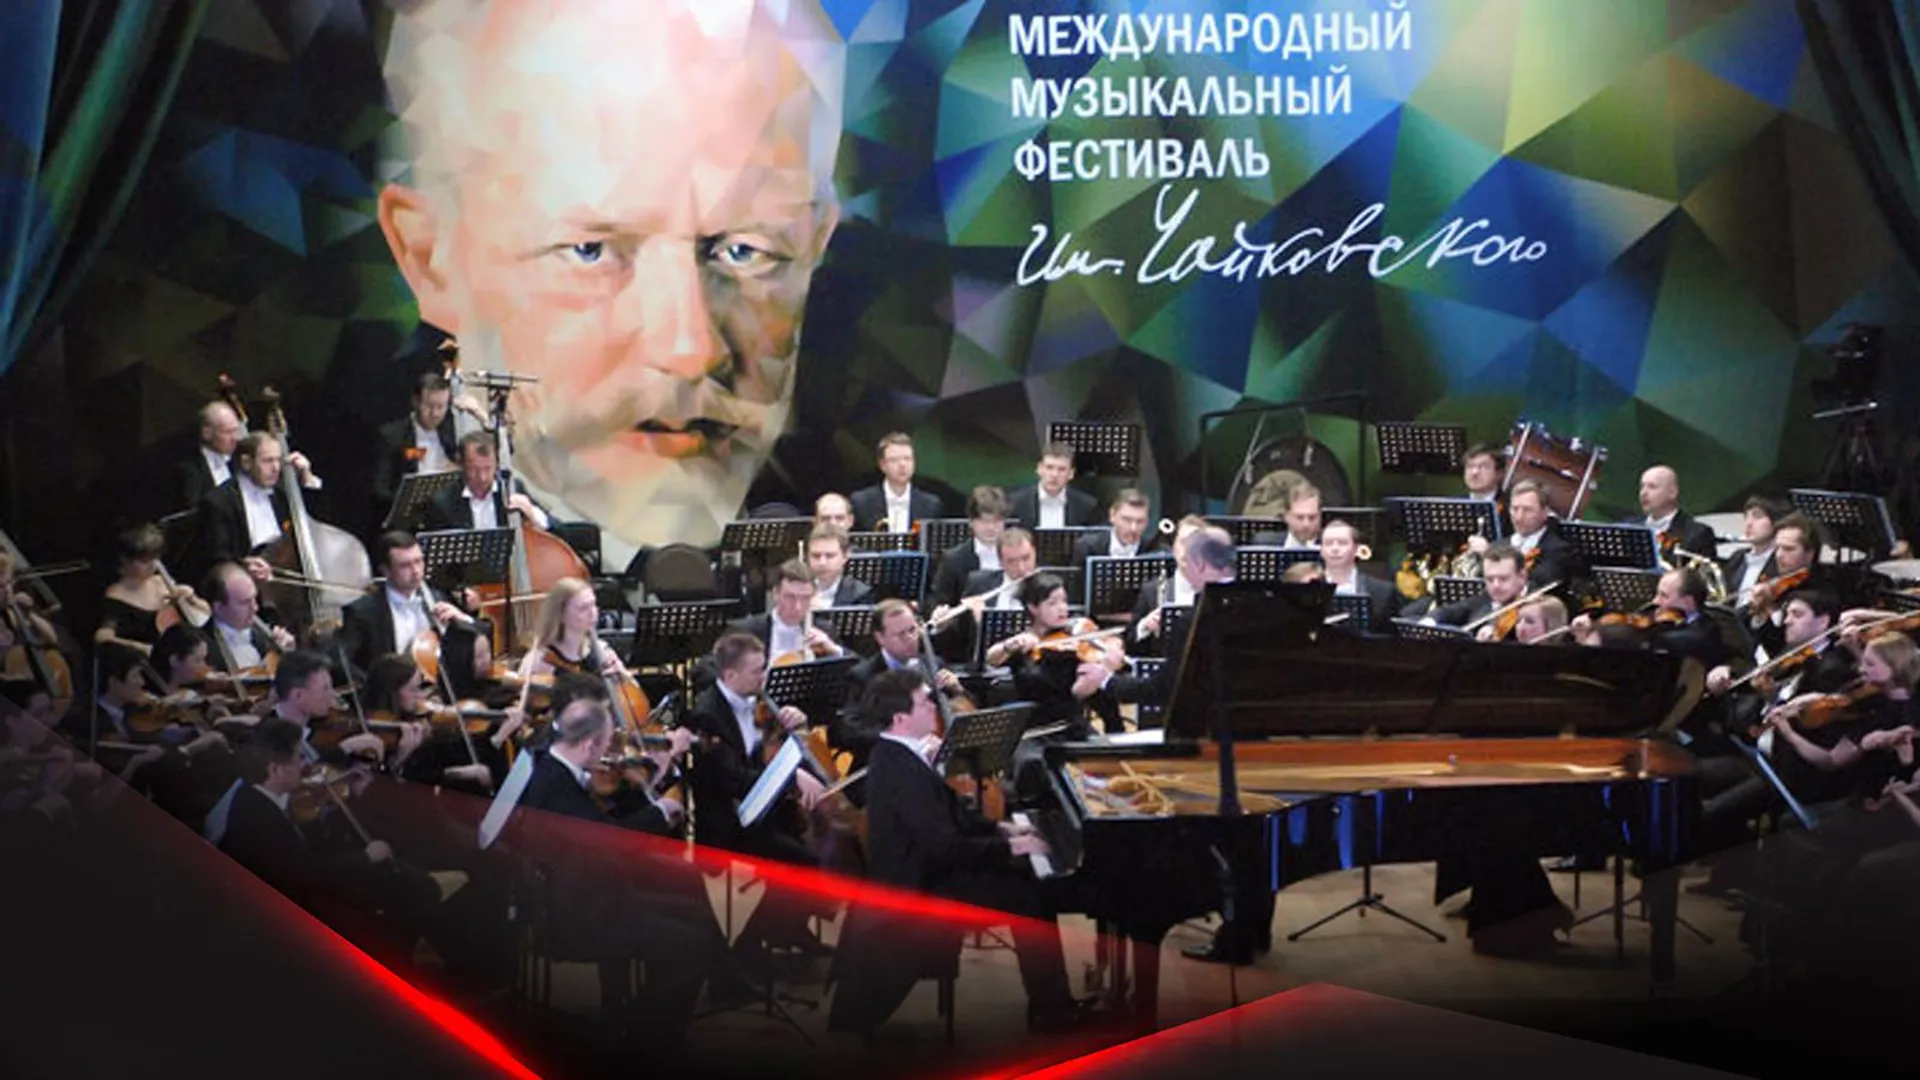 Музыка, которая говорит с душой. Фестиваль Чайковского в Клину — главное академическое событие мира